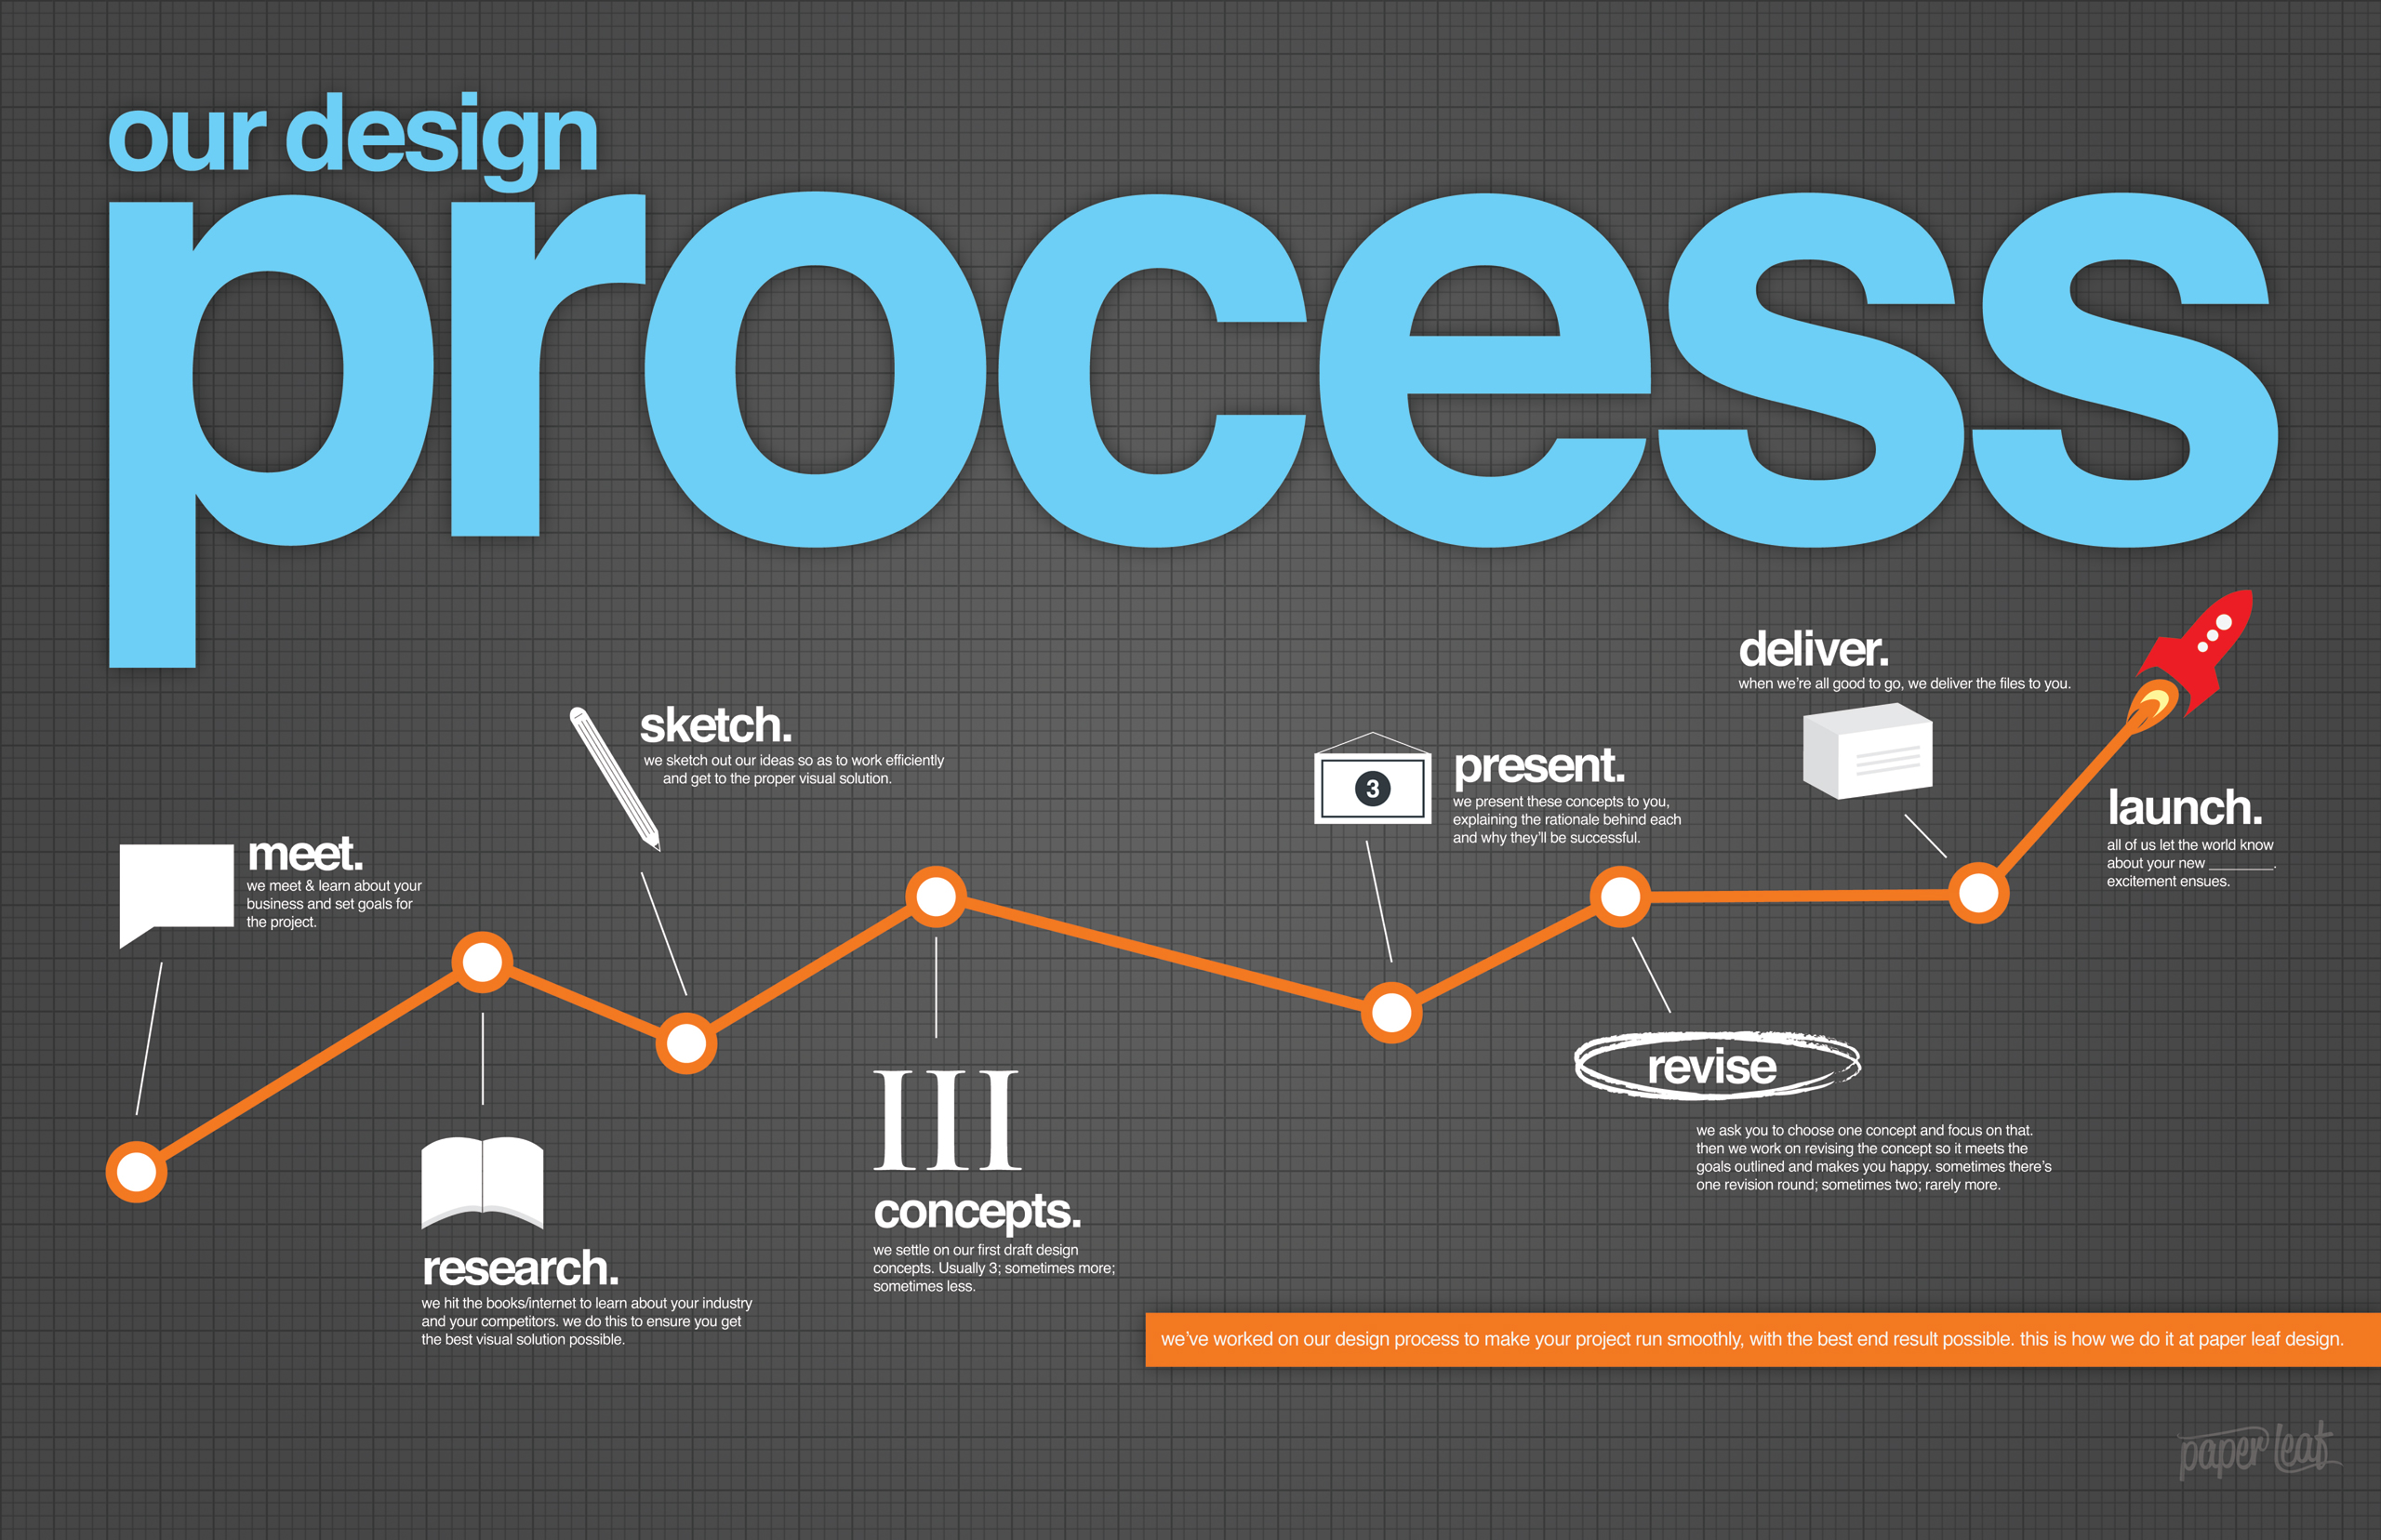 graphic design process diagram